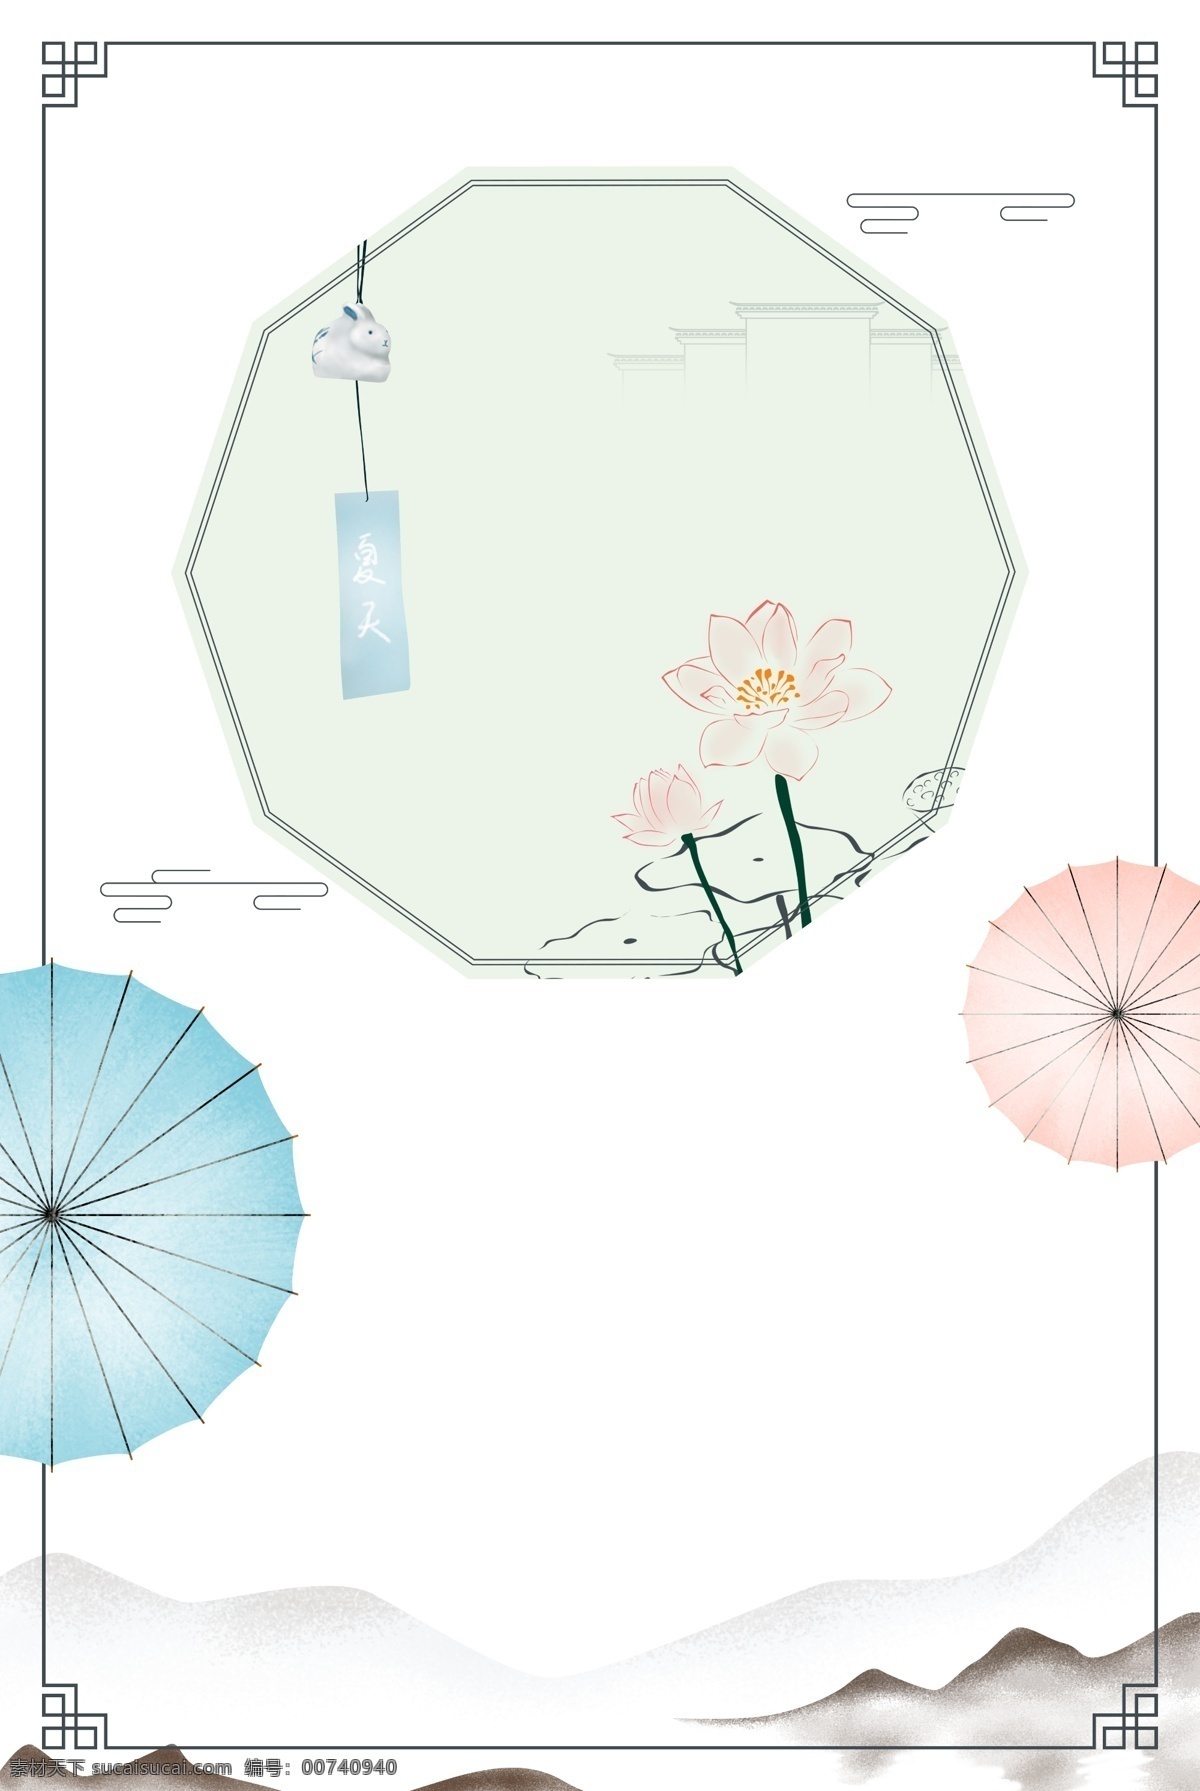 中式 风格 夏天 海报 边框 风铃 荷花 祥云 雨伞 伞 古风 中国风 荷叶 植物 主题边框 海报装饰